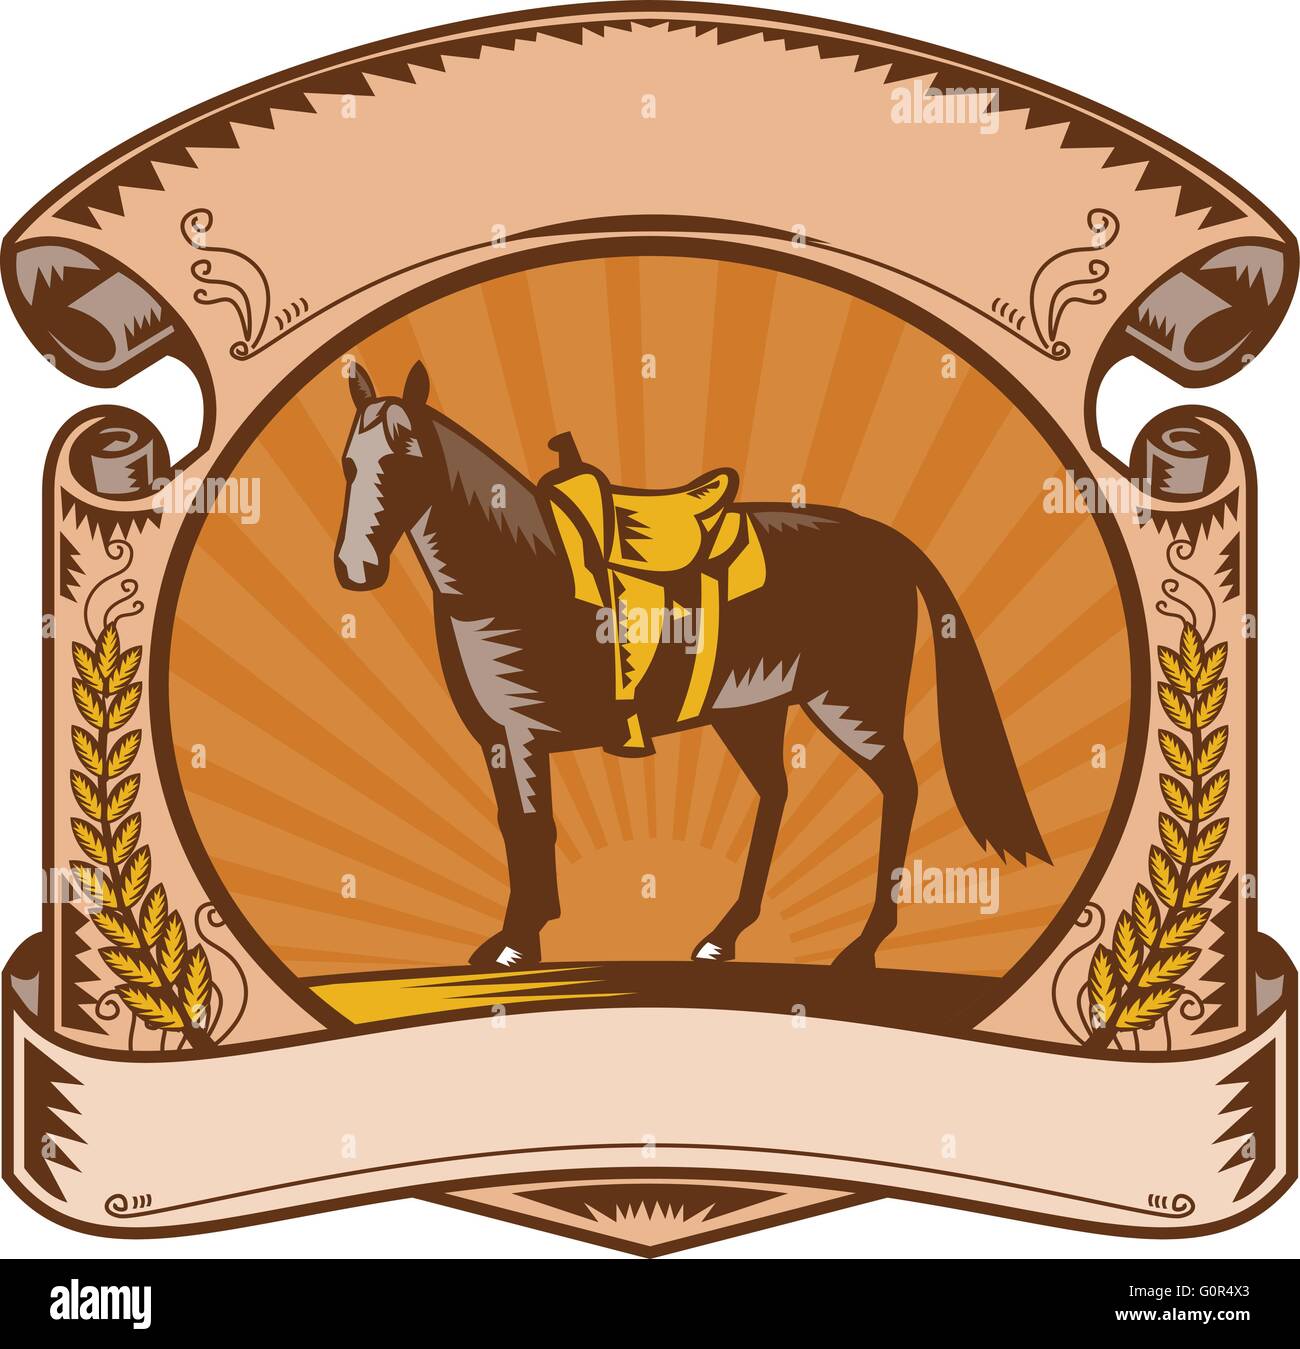 Illustrazione di un riderless horse con il vecchio stile western sella sulla recinzione ranch imposta all'interno di forma ovale con rotellina di scorrimento e foglie di alloro e sunburst in fatto di sfondo rétro xilografia stile. Illustrazione Vettoriale